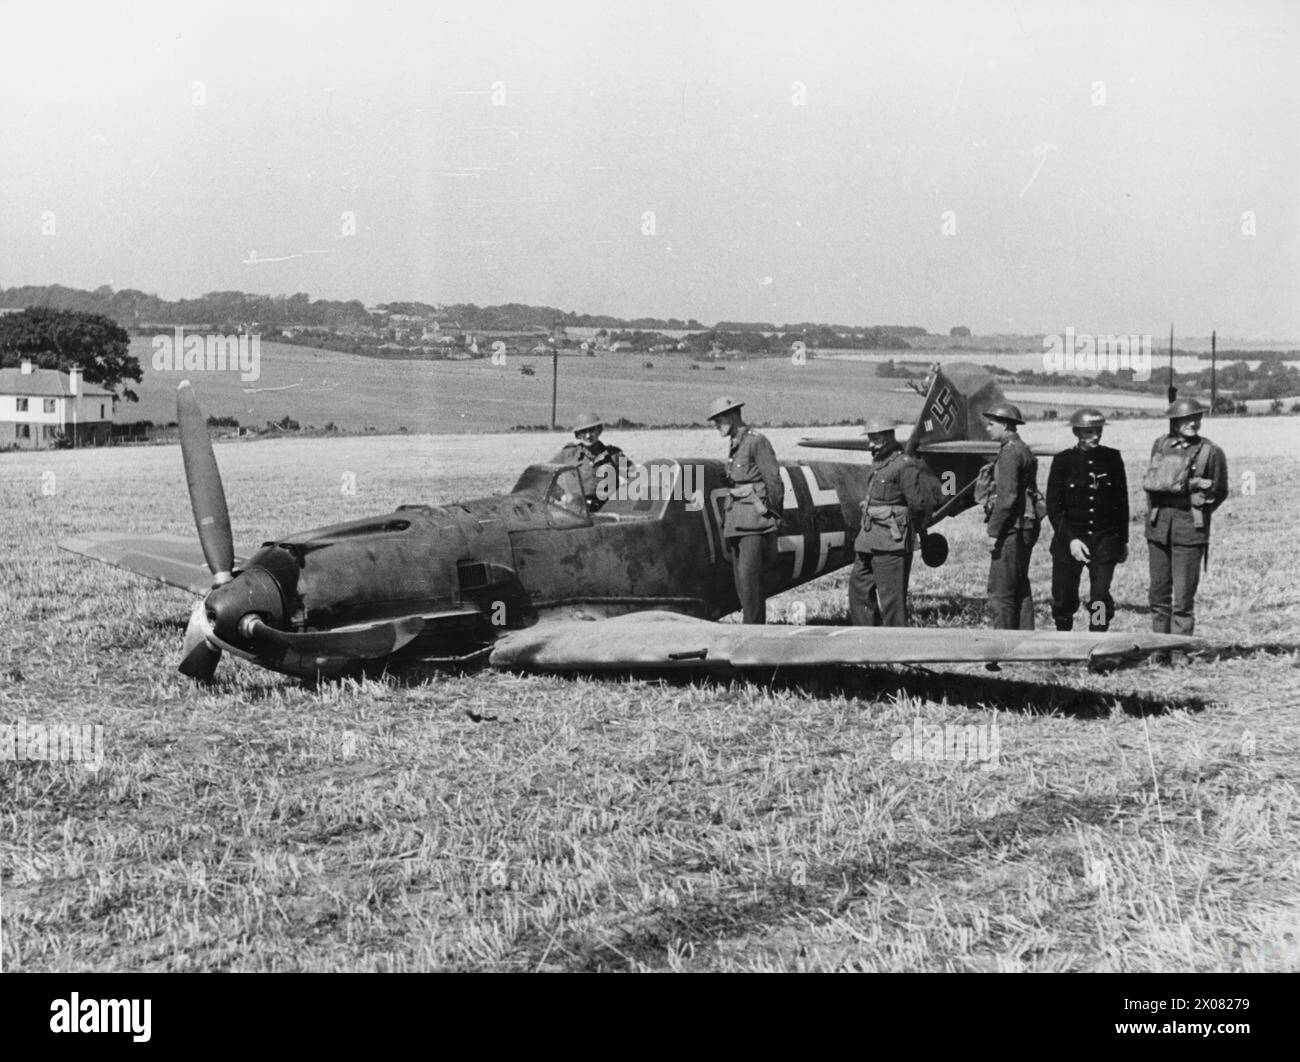 BATTAGLIA DELLA GRAN BRETAGNA 1940 - soldati e polizia ispezionano Messerschmitt Bf 109E-4 (W.Nr. 5587) pilotato da Ofw. Fritz Beeck del 6./JG 51, che sbarcò a East Langdon nel Kent mentre scortava un attacco a Manston, il 24 agosto 1940 Foto Stock